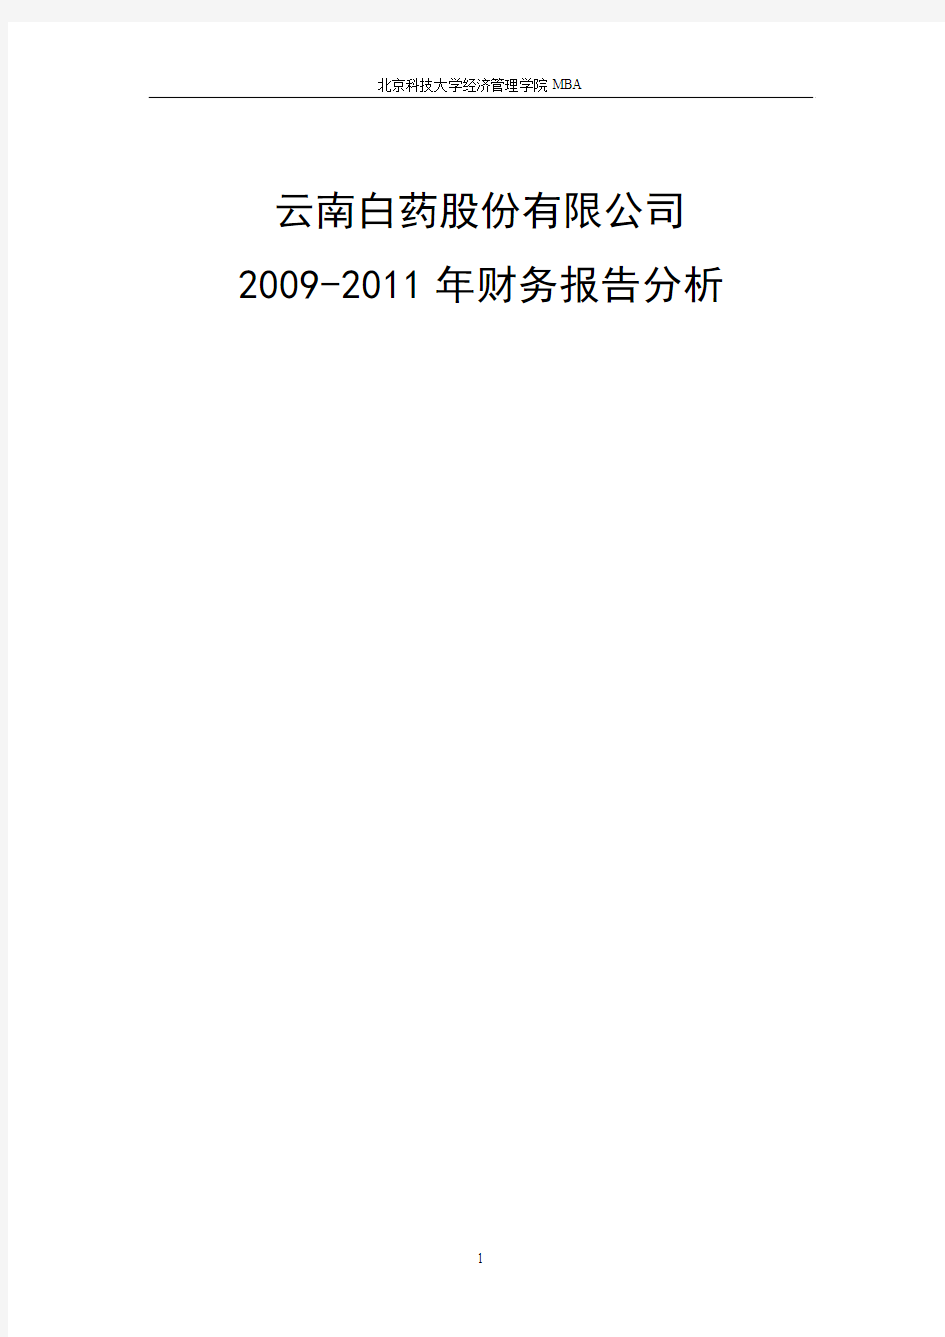 云南白药集团股份有限公司财务报表分析 2009-2011